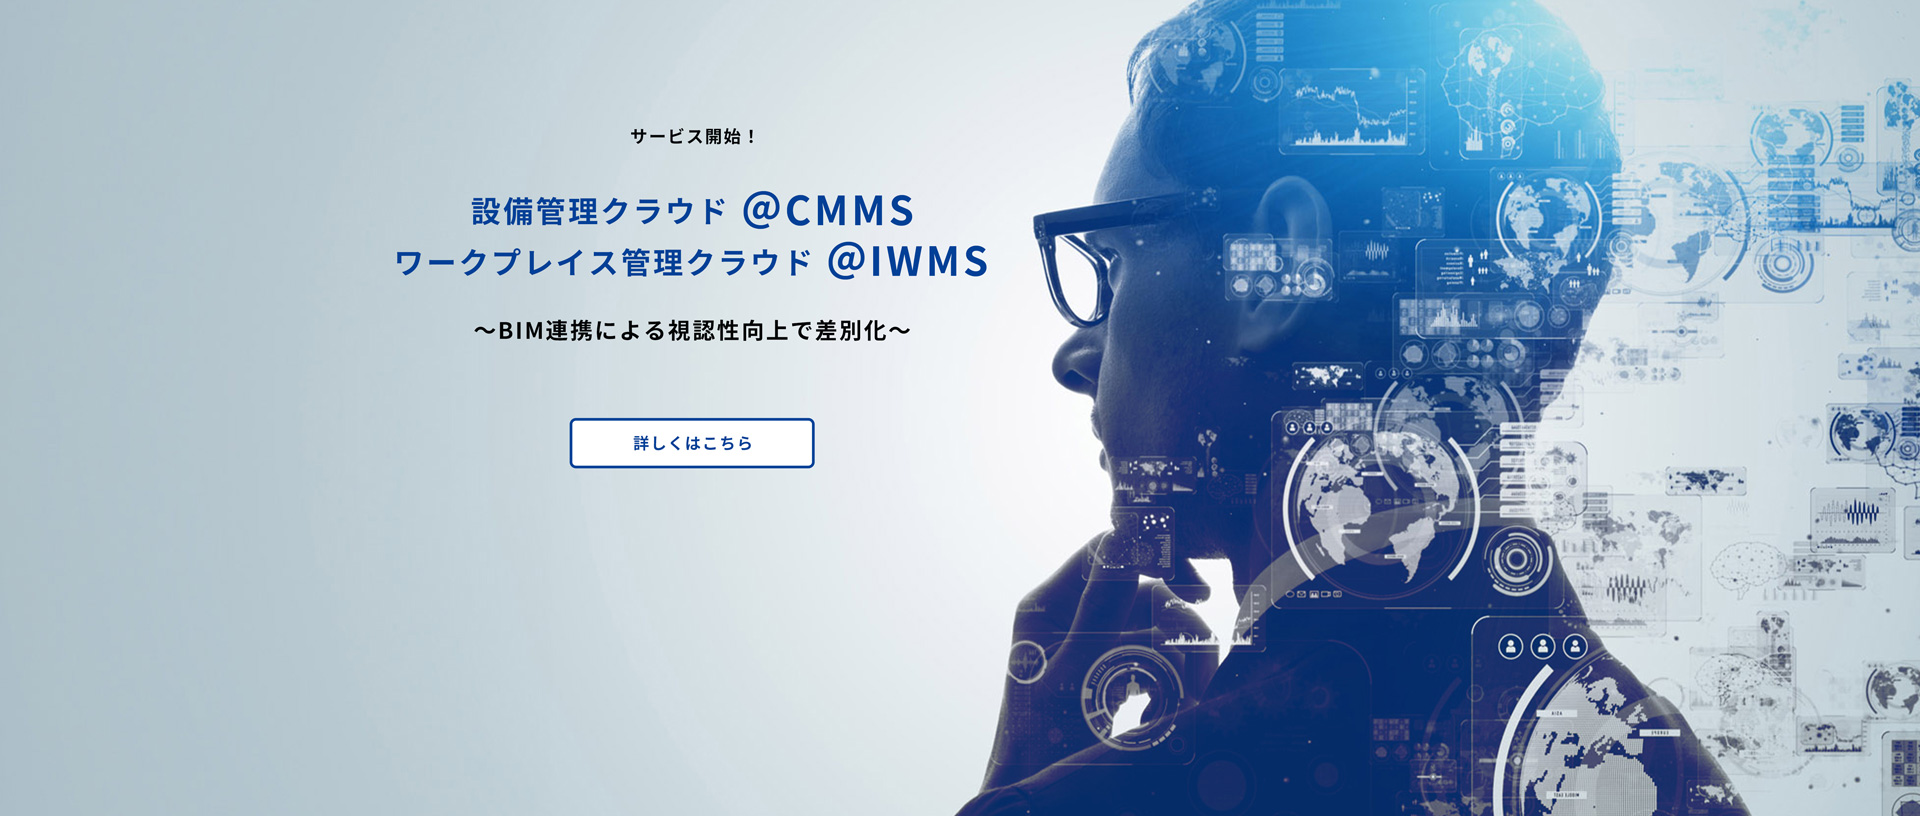 サービス開始！設備クラウド@CMMS、ワークプレイス管理クラウド@IWMS BIM連携による視認性向上で差別化